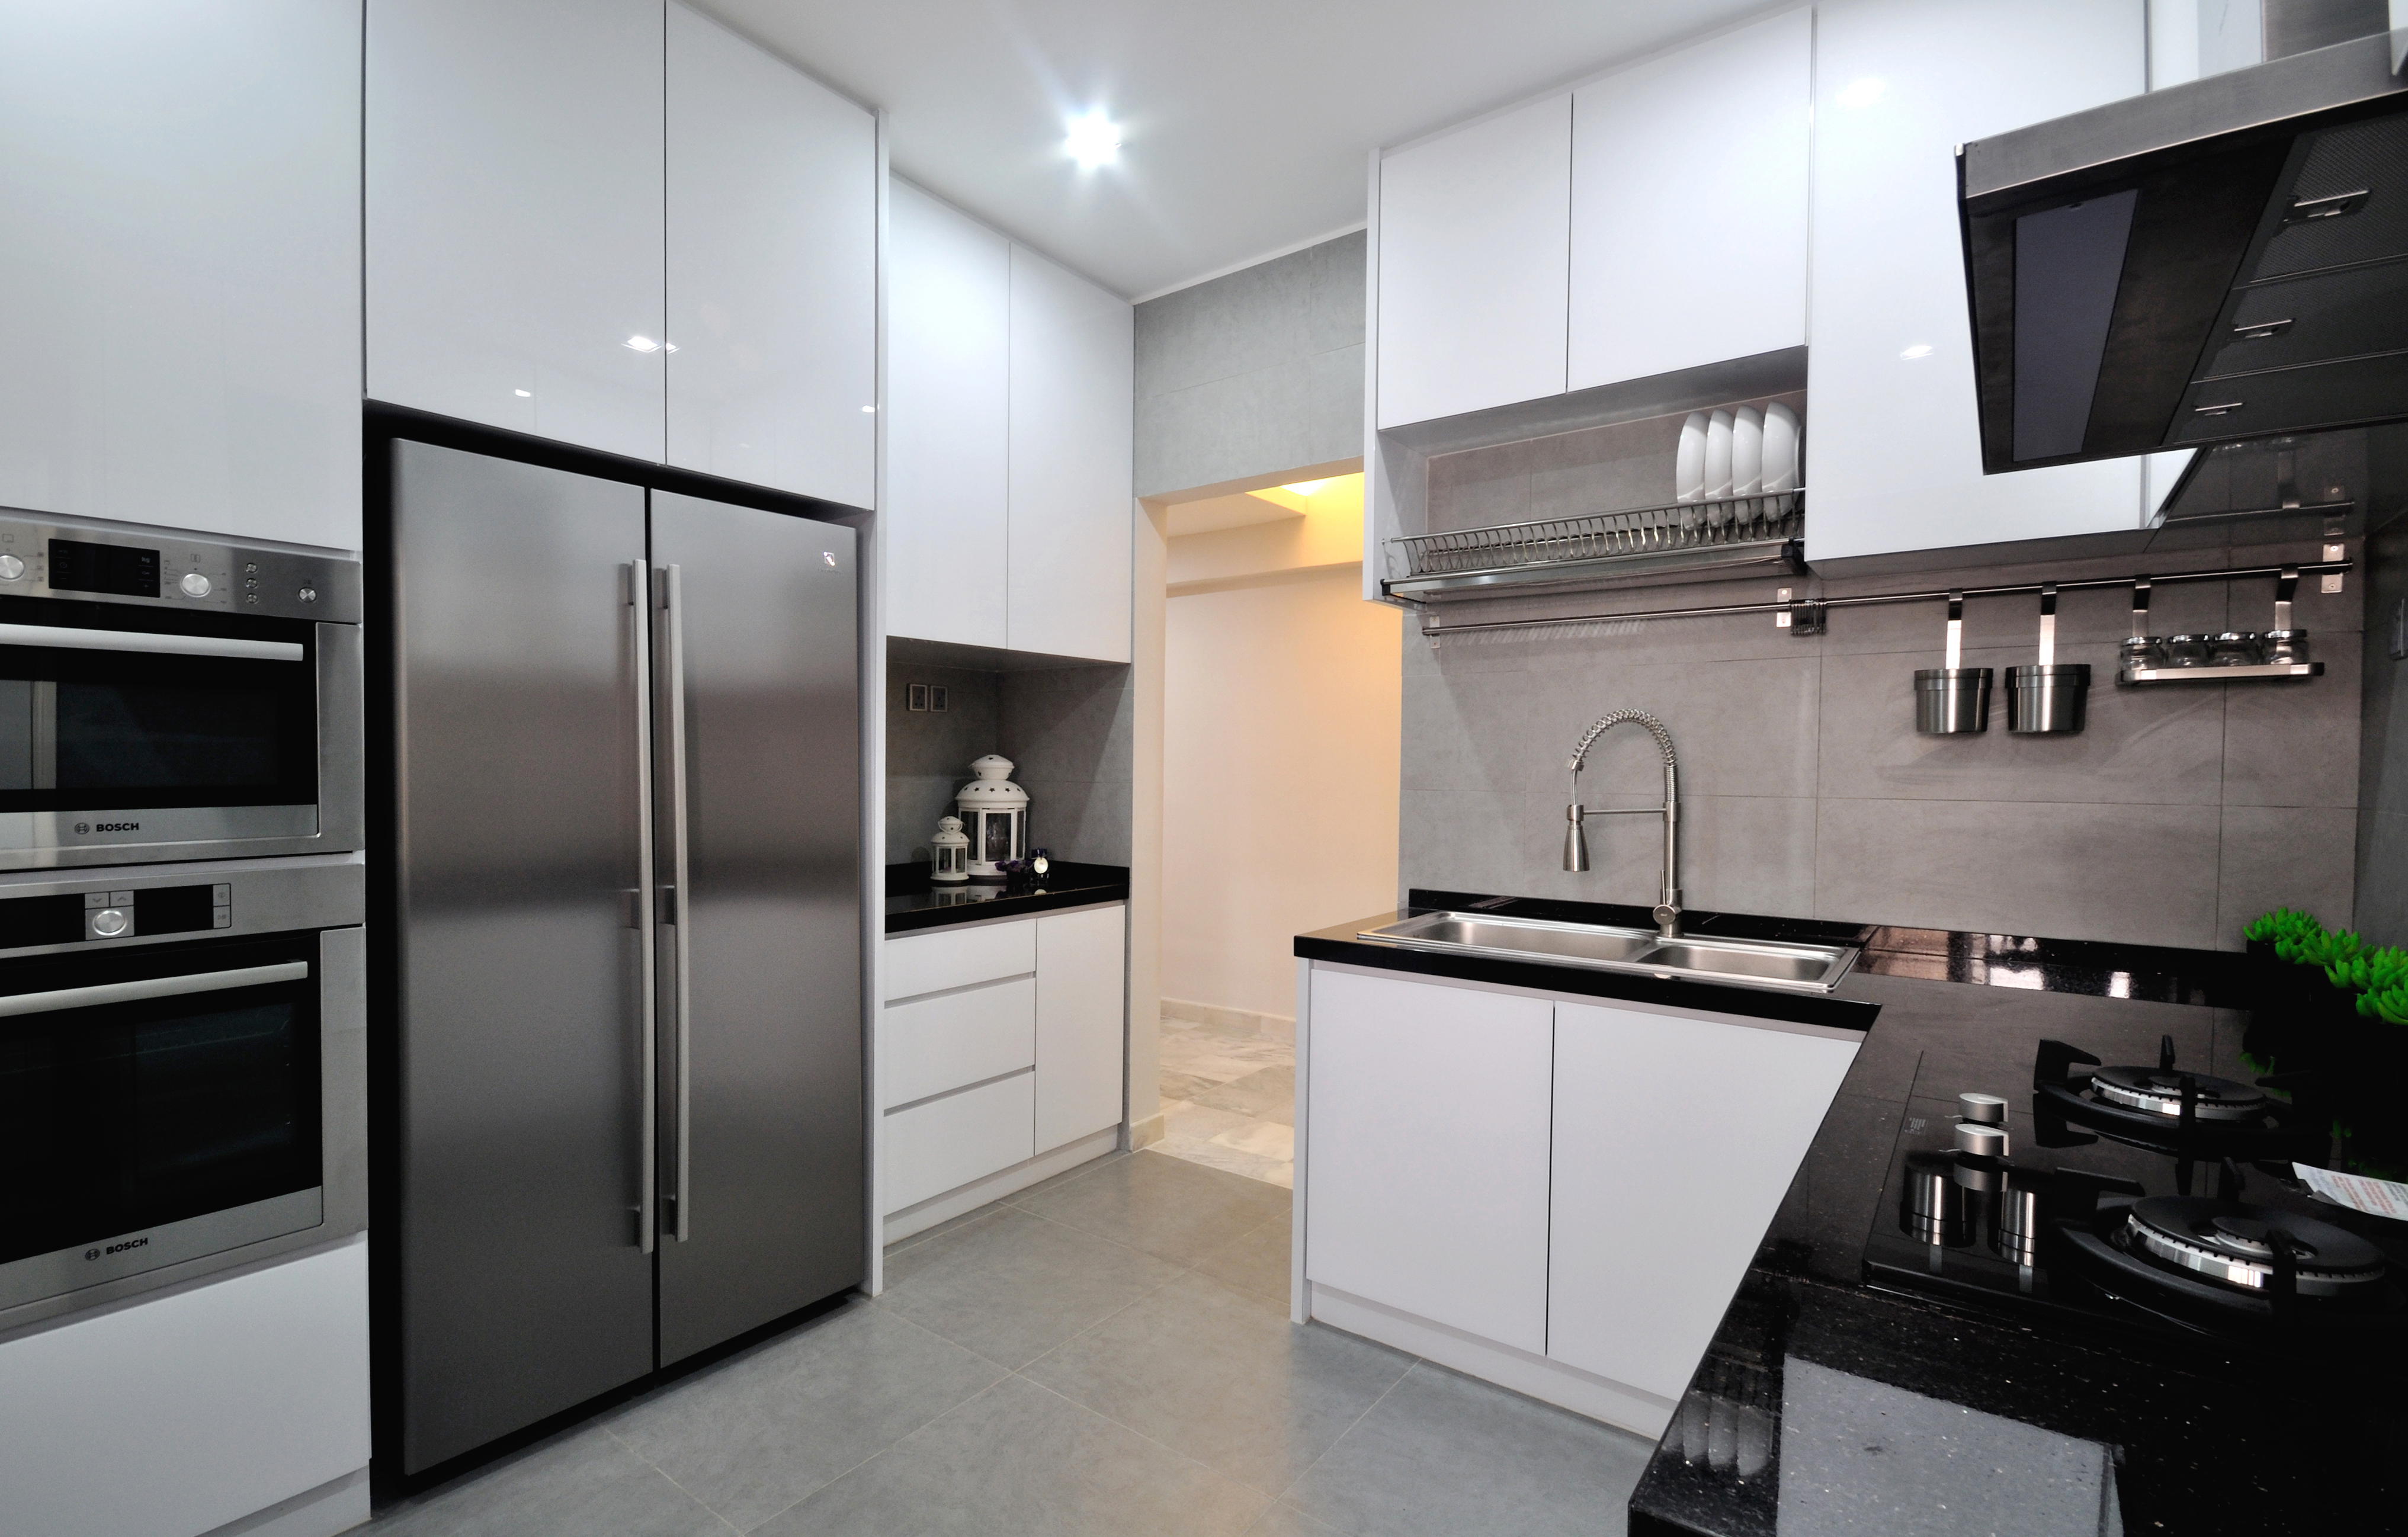 Kabinet dapur moden dengan tema hitam dan putih